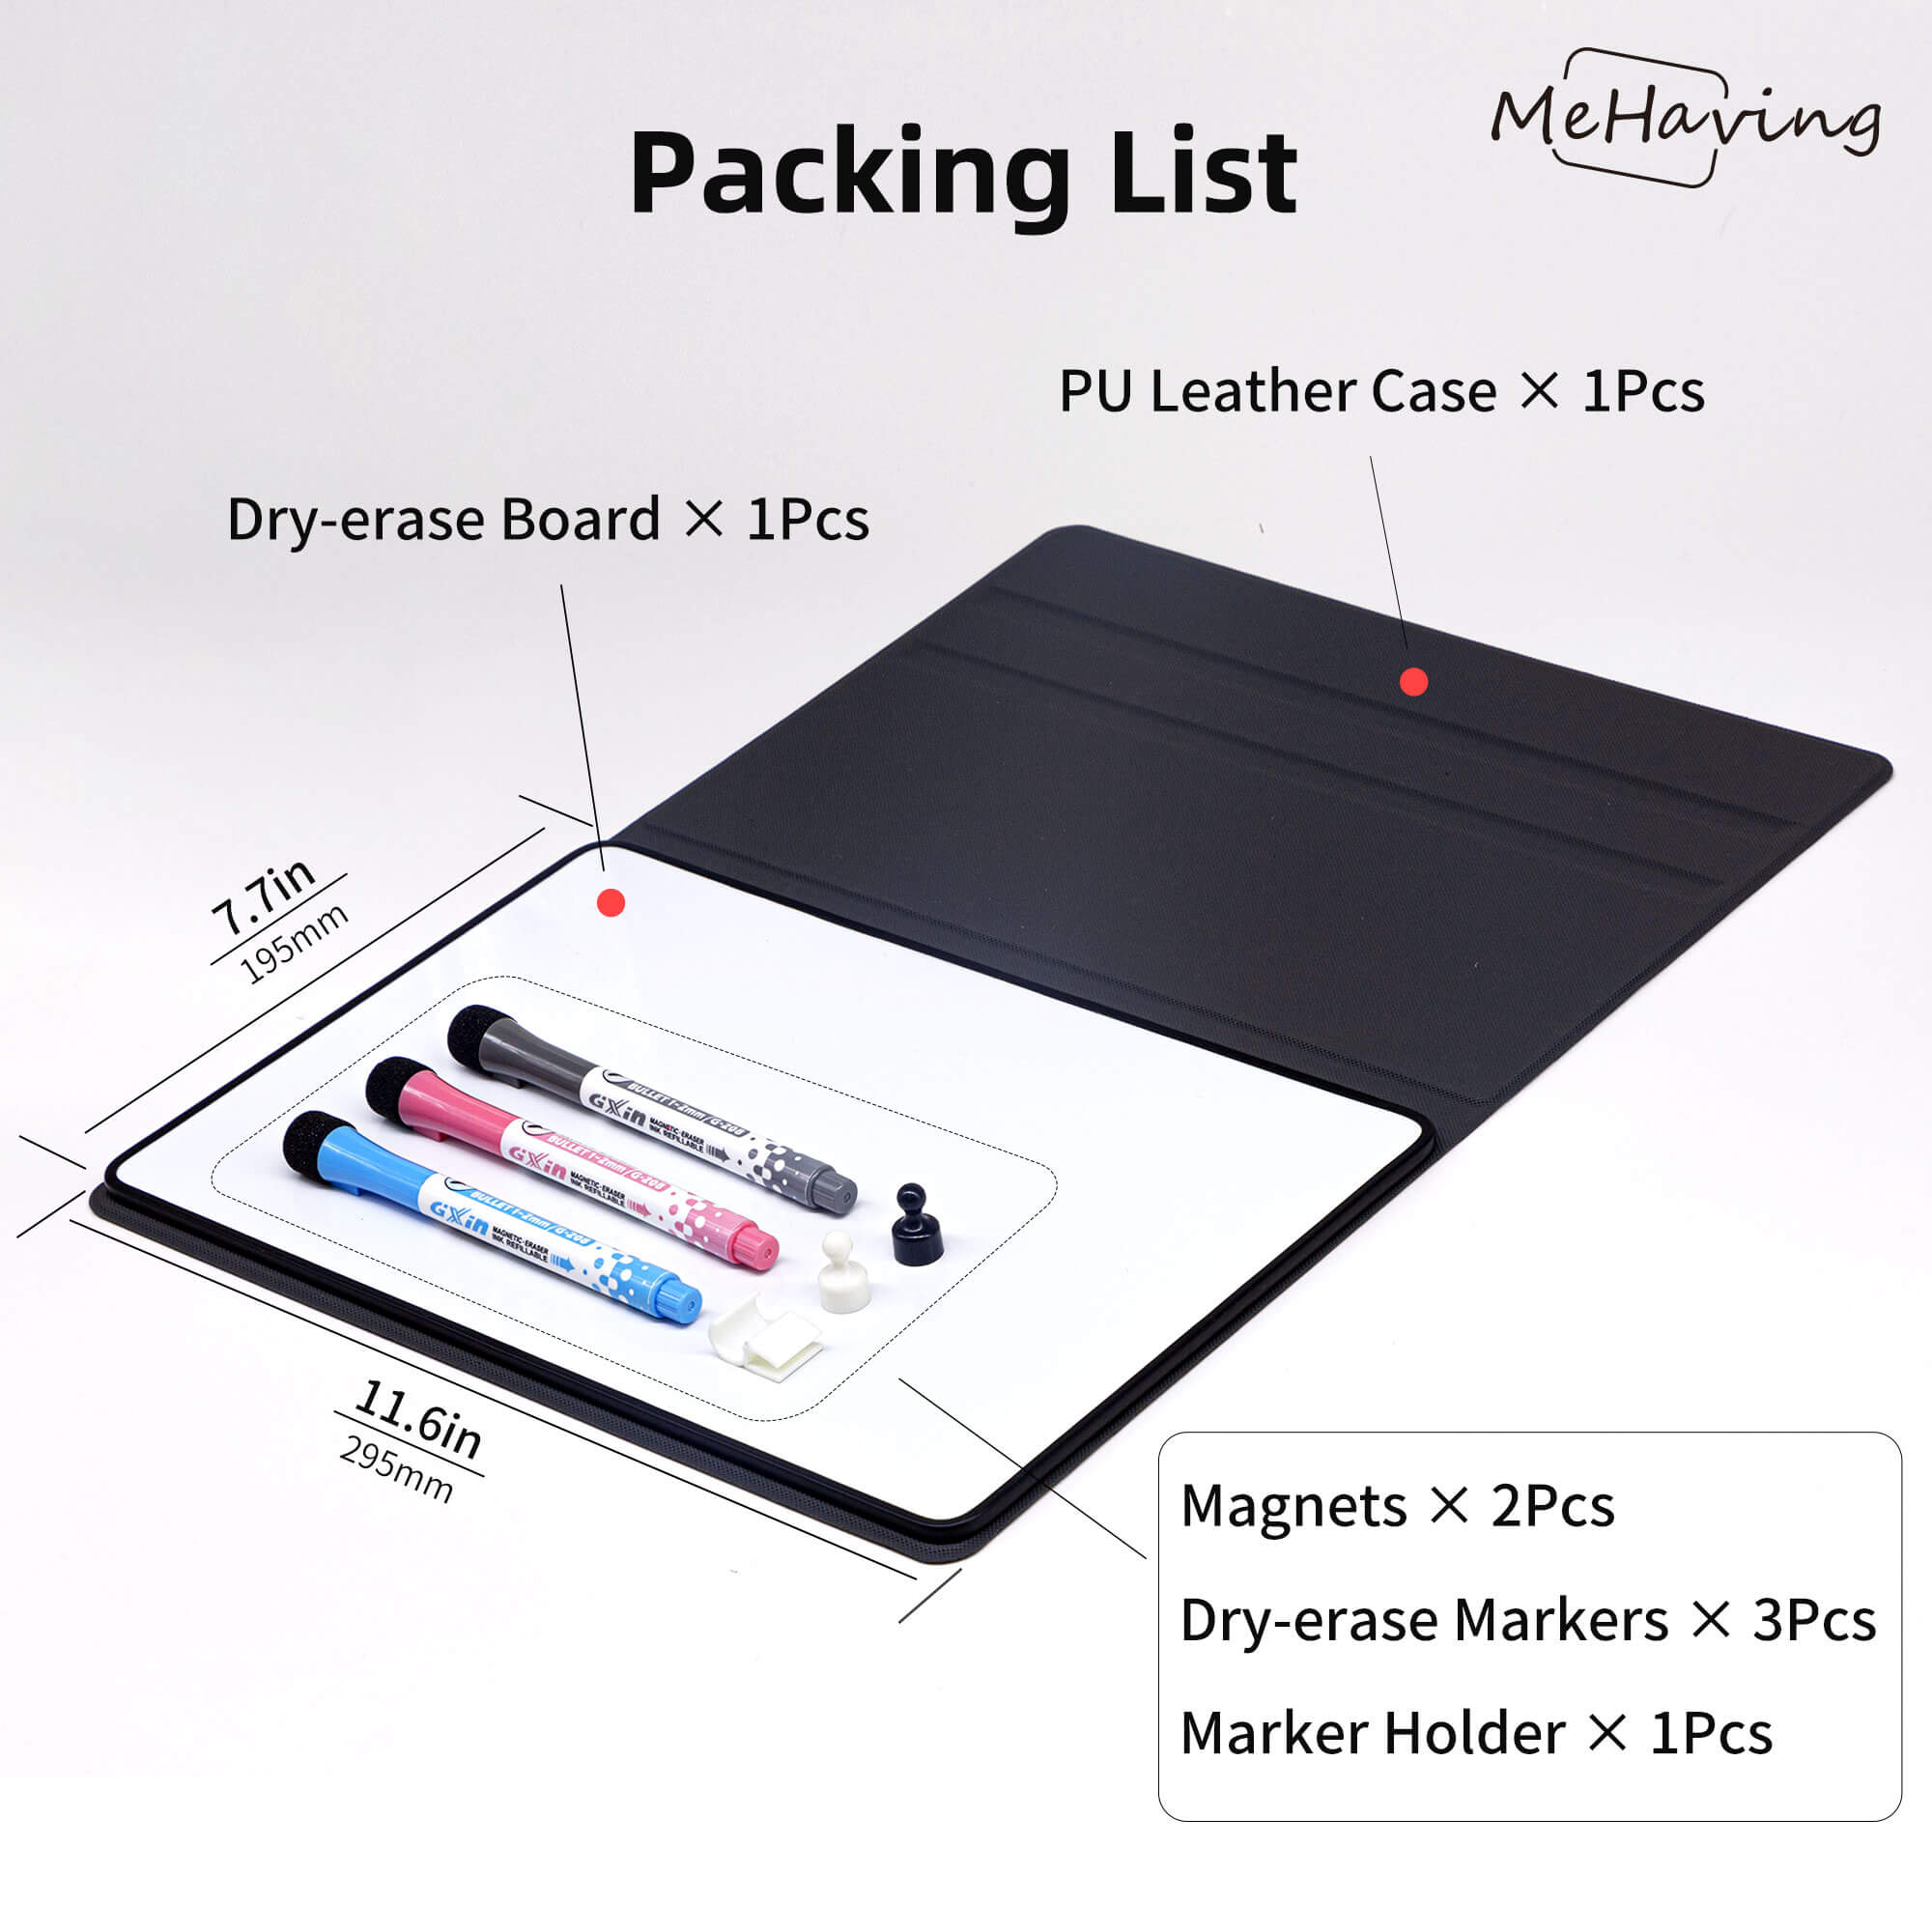 Portable Dry Erase Drawing Kit